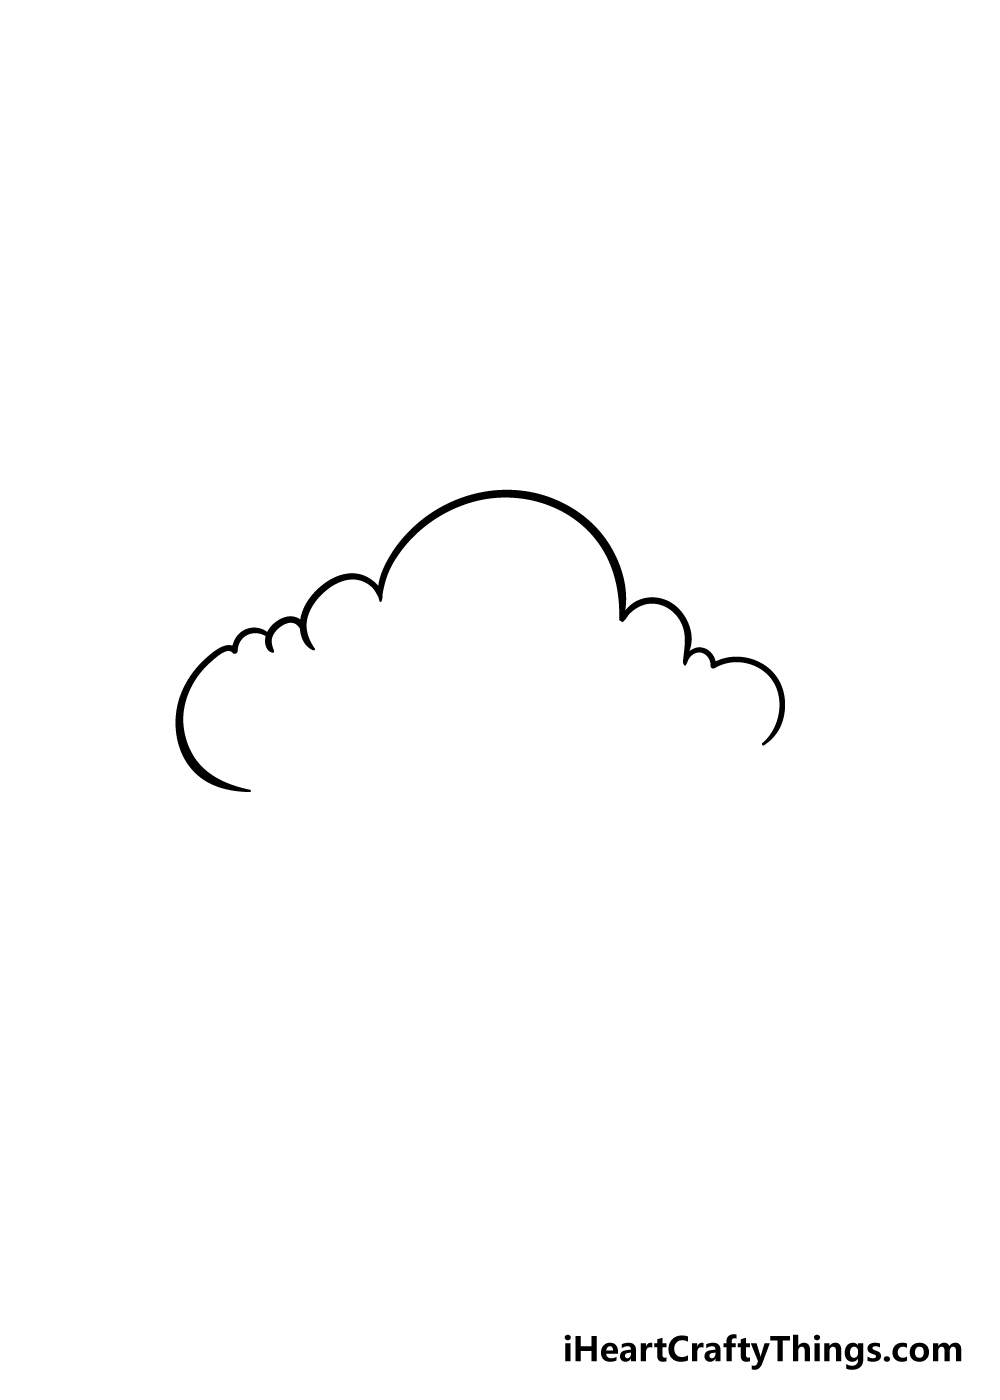 Vẽ Hoạt Hình  Vẽ tay đám mây mô hình trang trí png tải về  Miễn phí trong  suốt Màu Xanh png Tải về